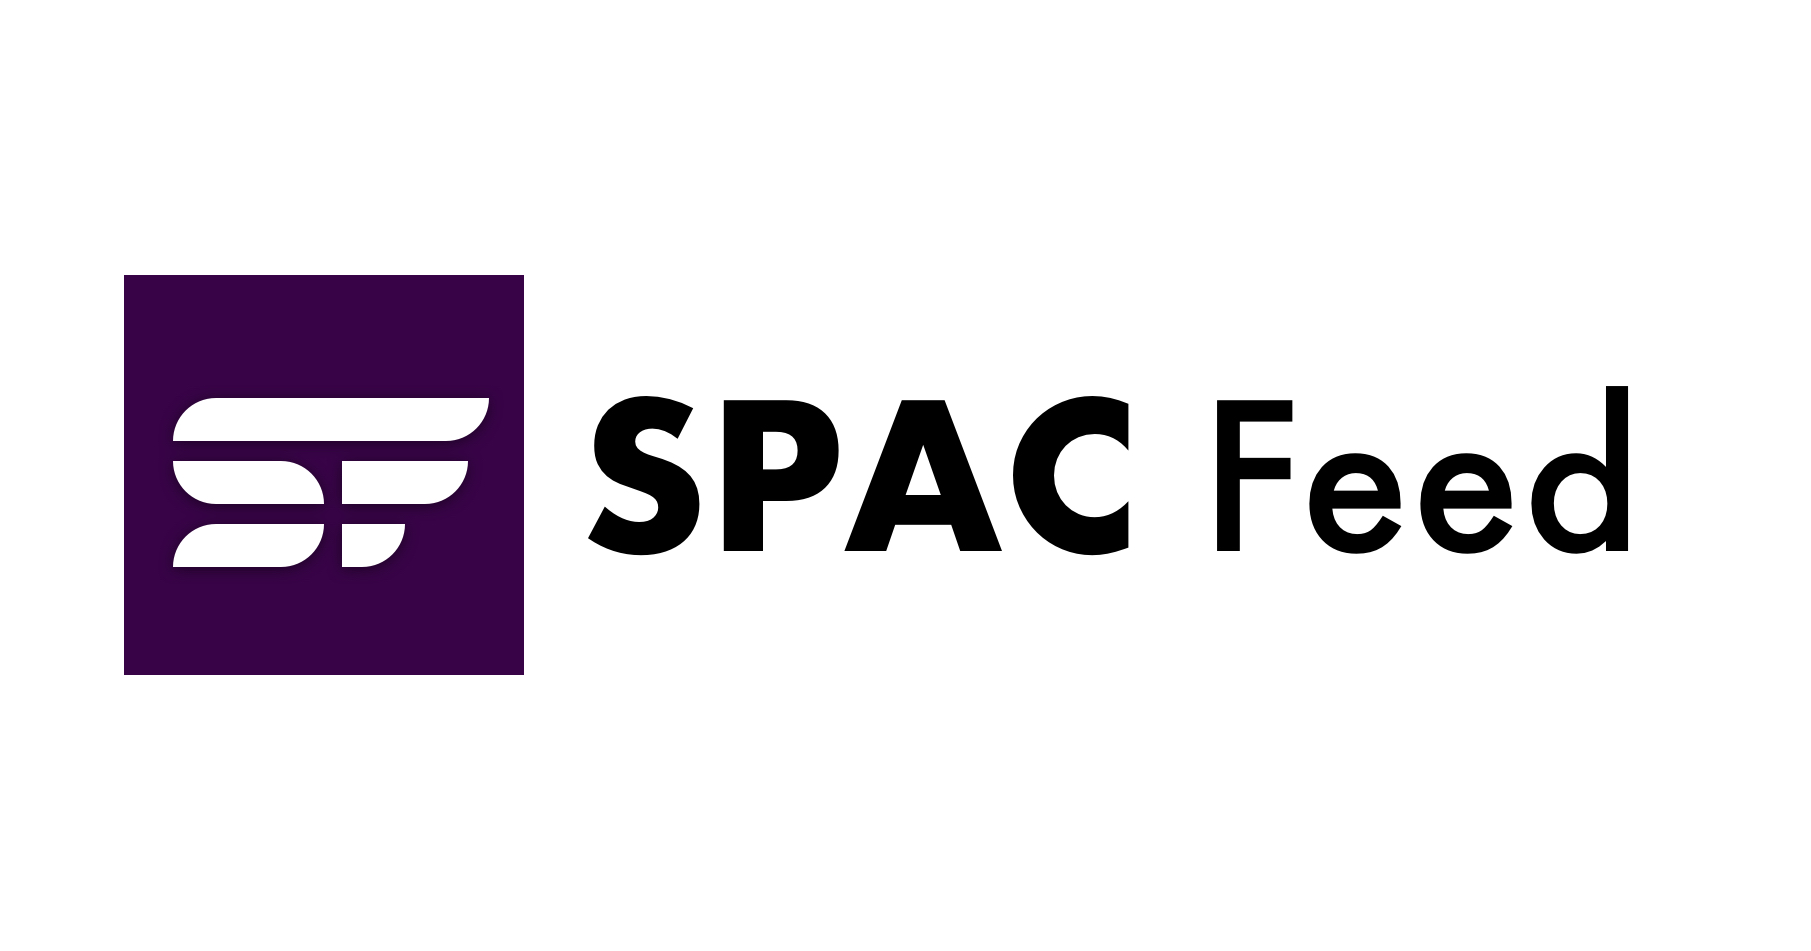 Åbent møderapport: SEC godkender SPAC's endelige regler i 3-2 afstemninger | SPAC foder